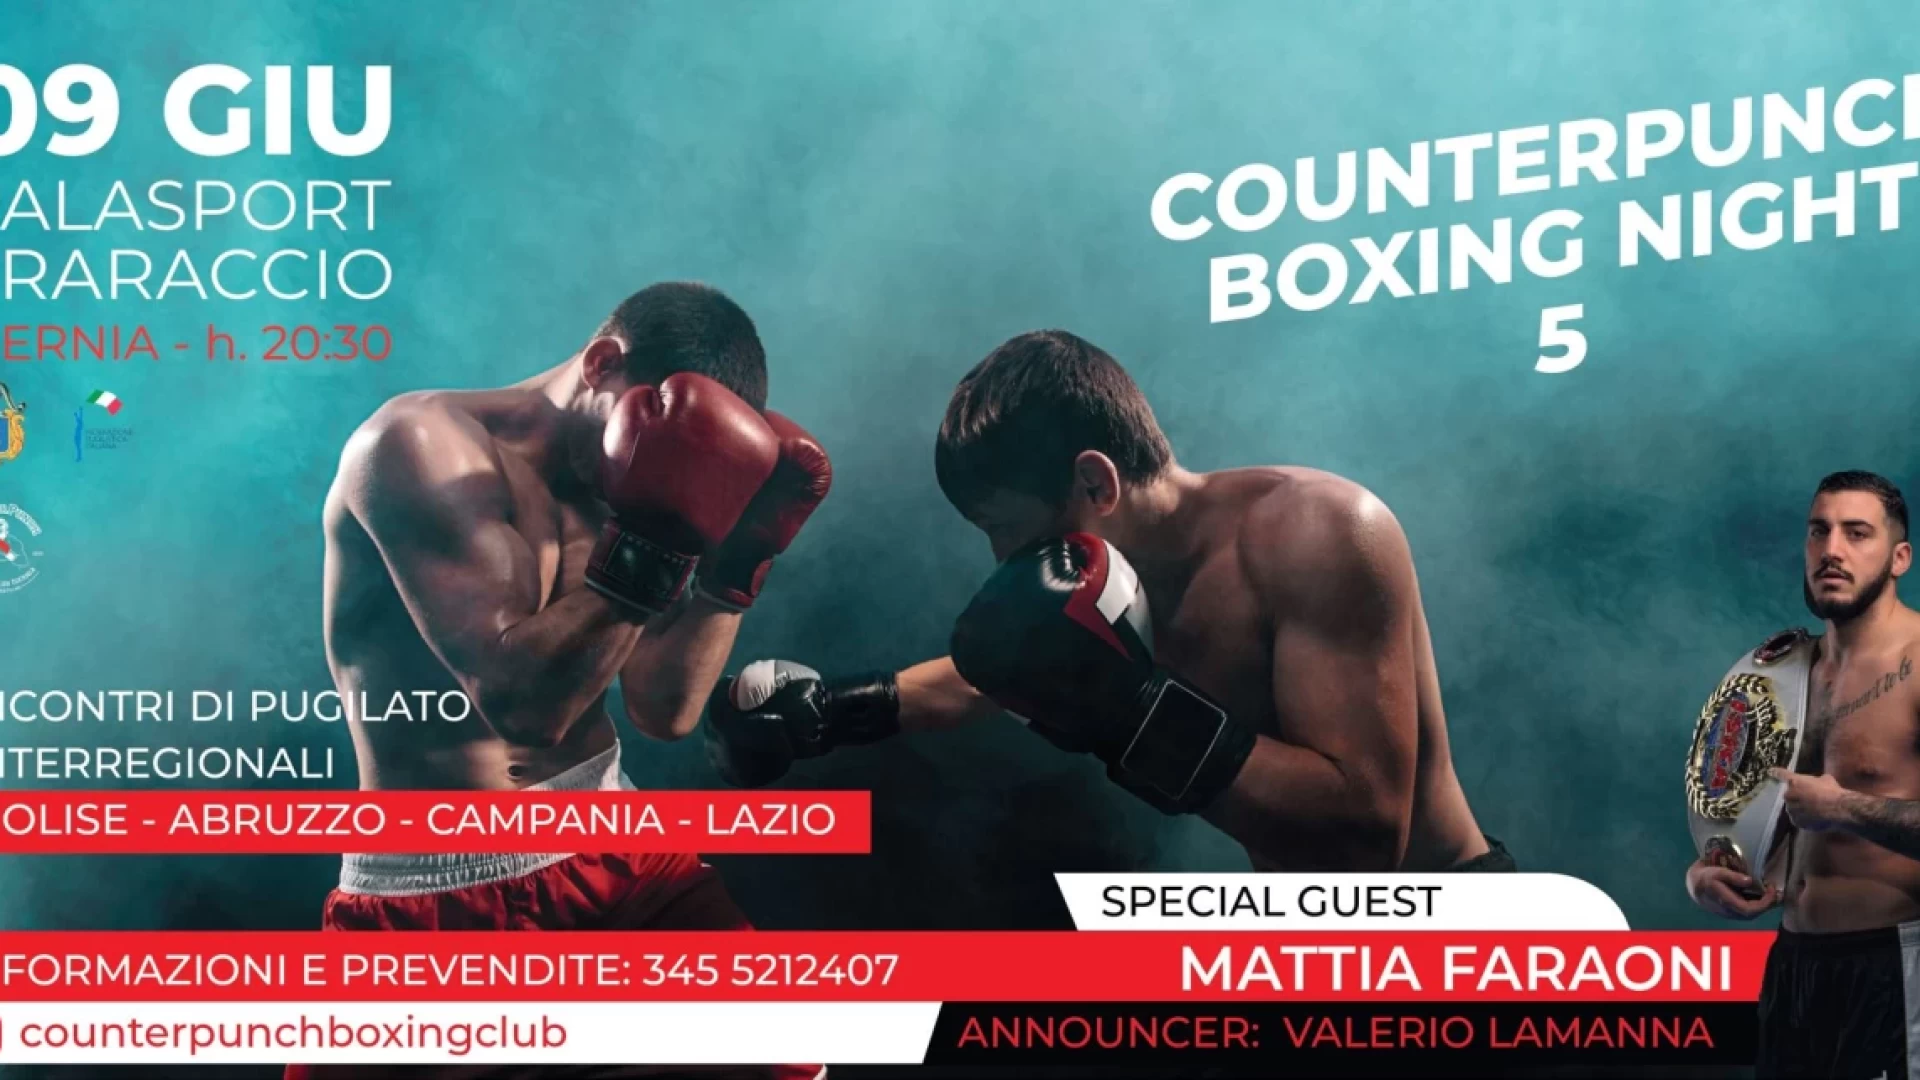 Pugilato: Counterpunch Boxing Night, cresce l’attesa per l’evento sportivo ad Isernia. Prevendite ancora aperte.